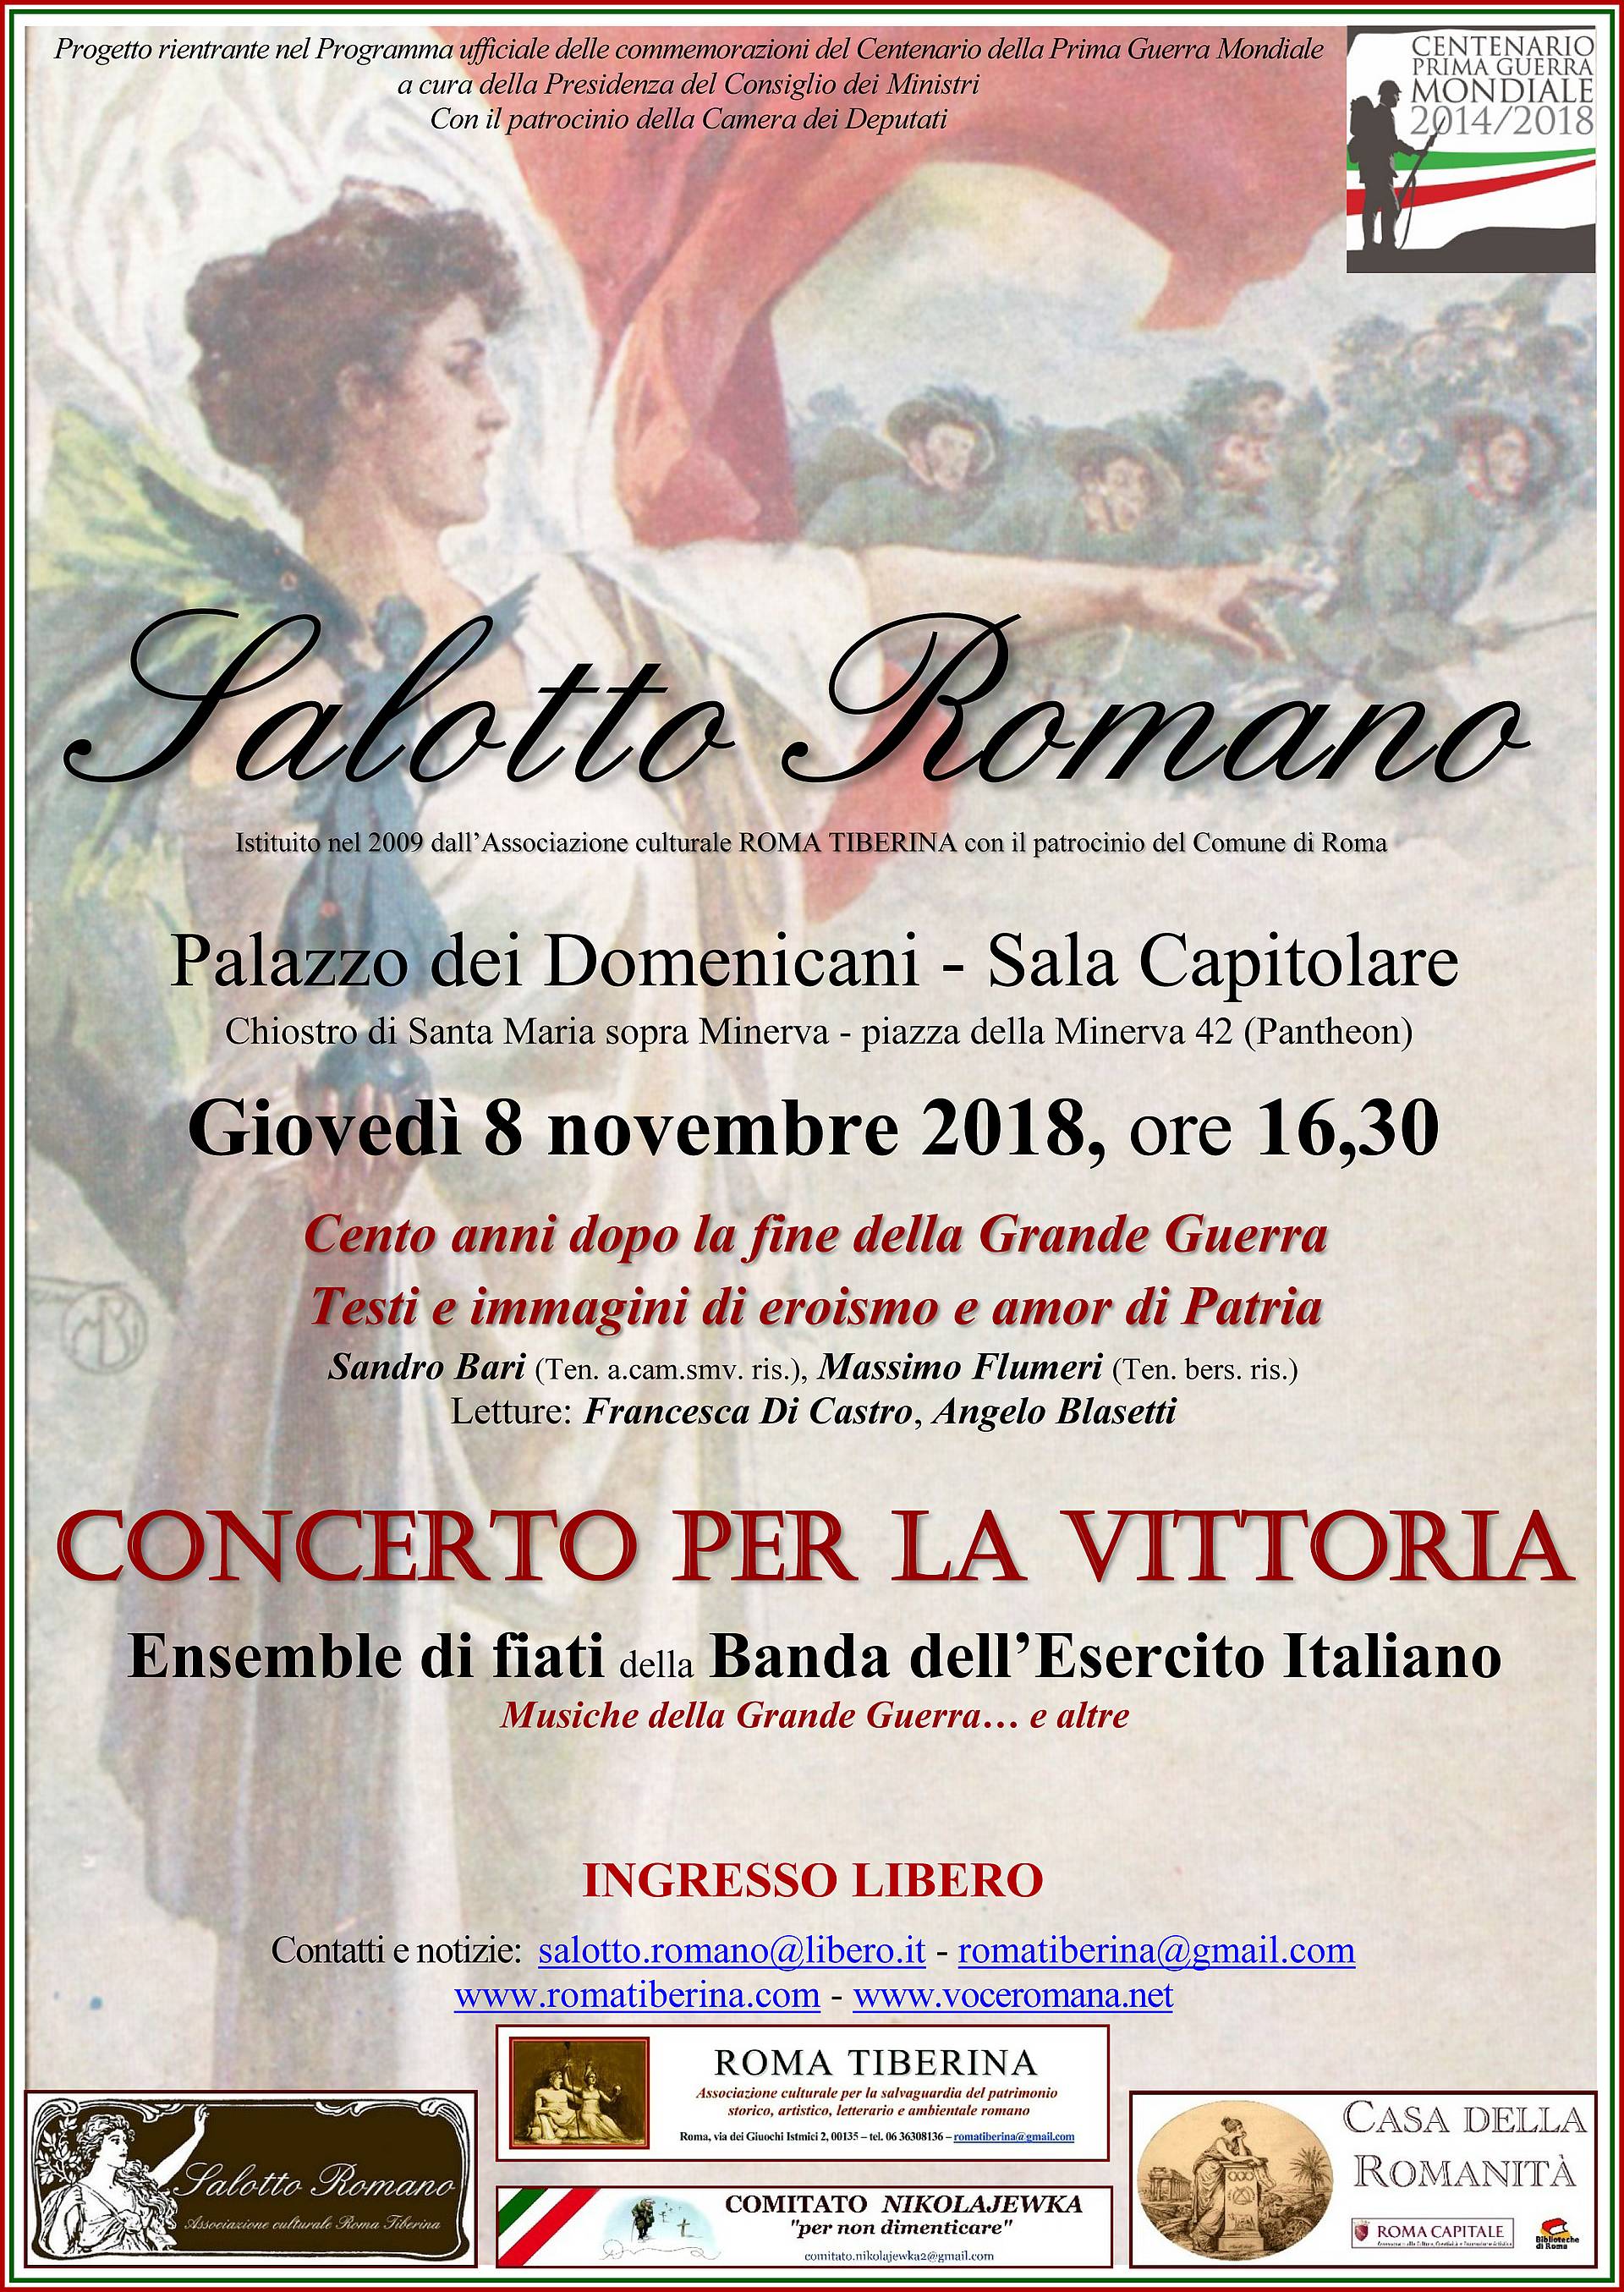 Salotto Romano 8 novembre 2018 - locandina Vittoria